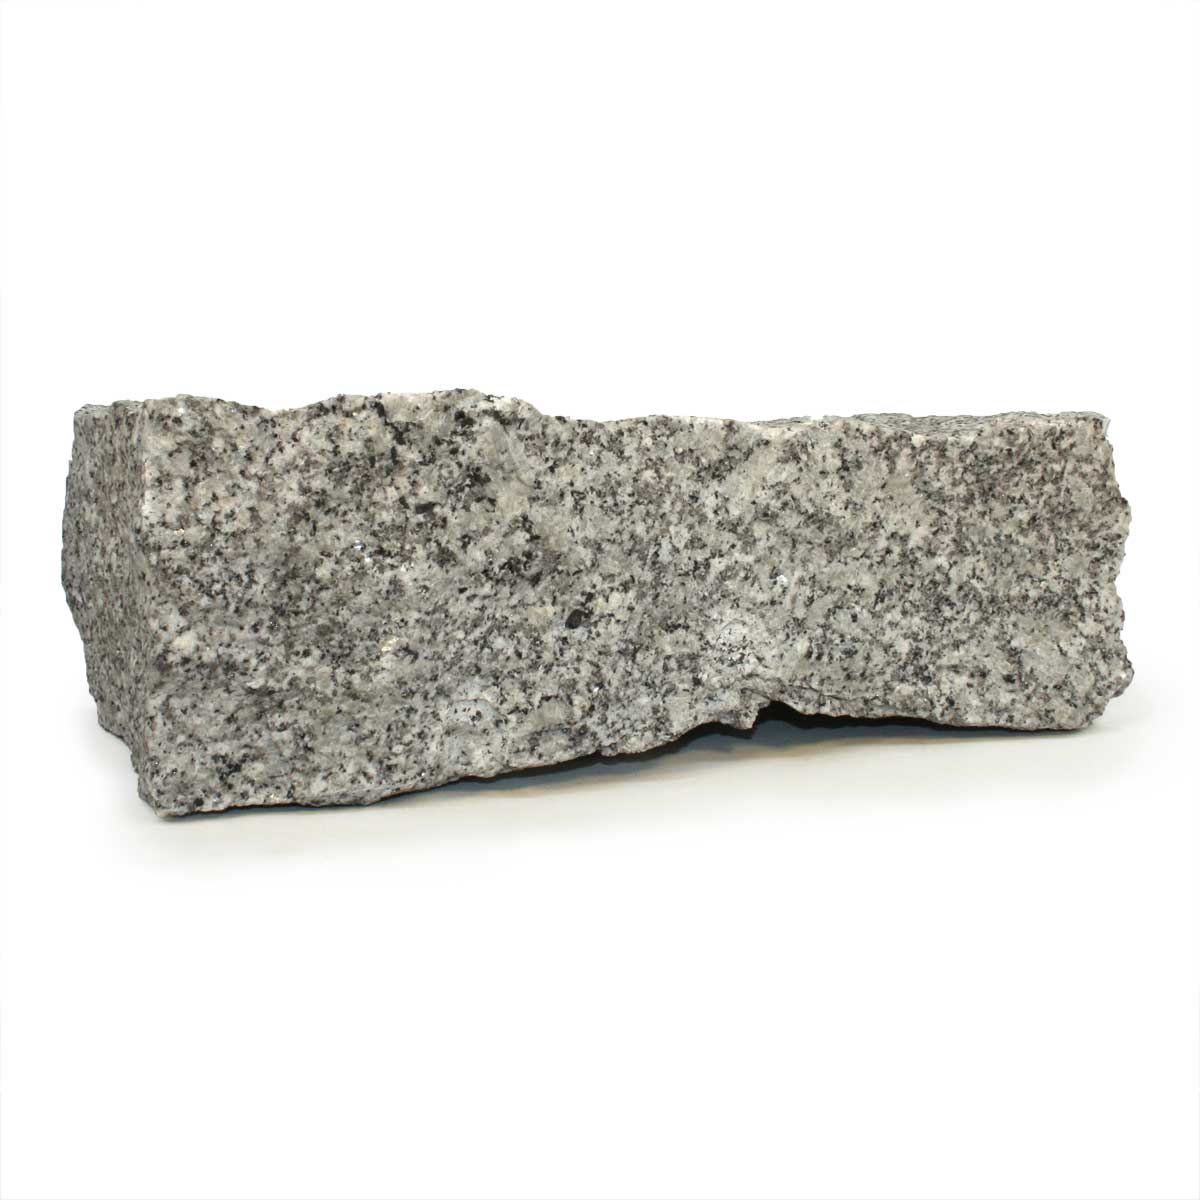 Granit 40x20x10 cm Grau Bordstein Randstein Begrenzungsstein Granitstein 